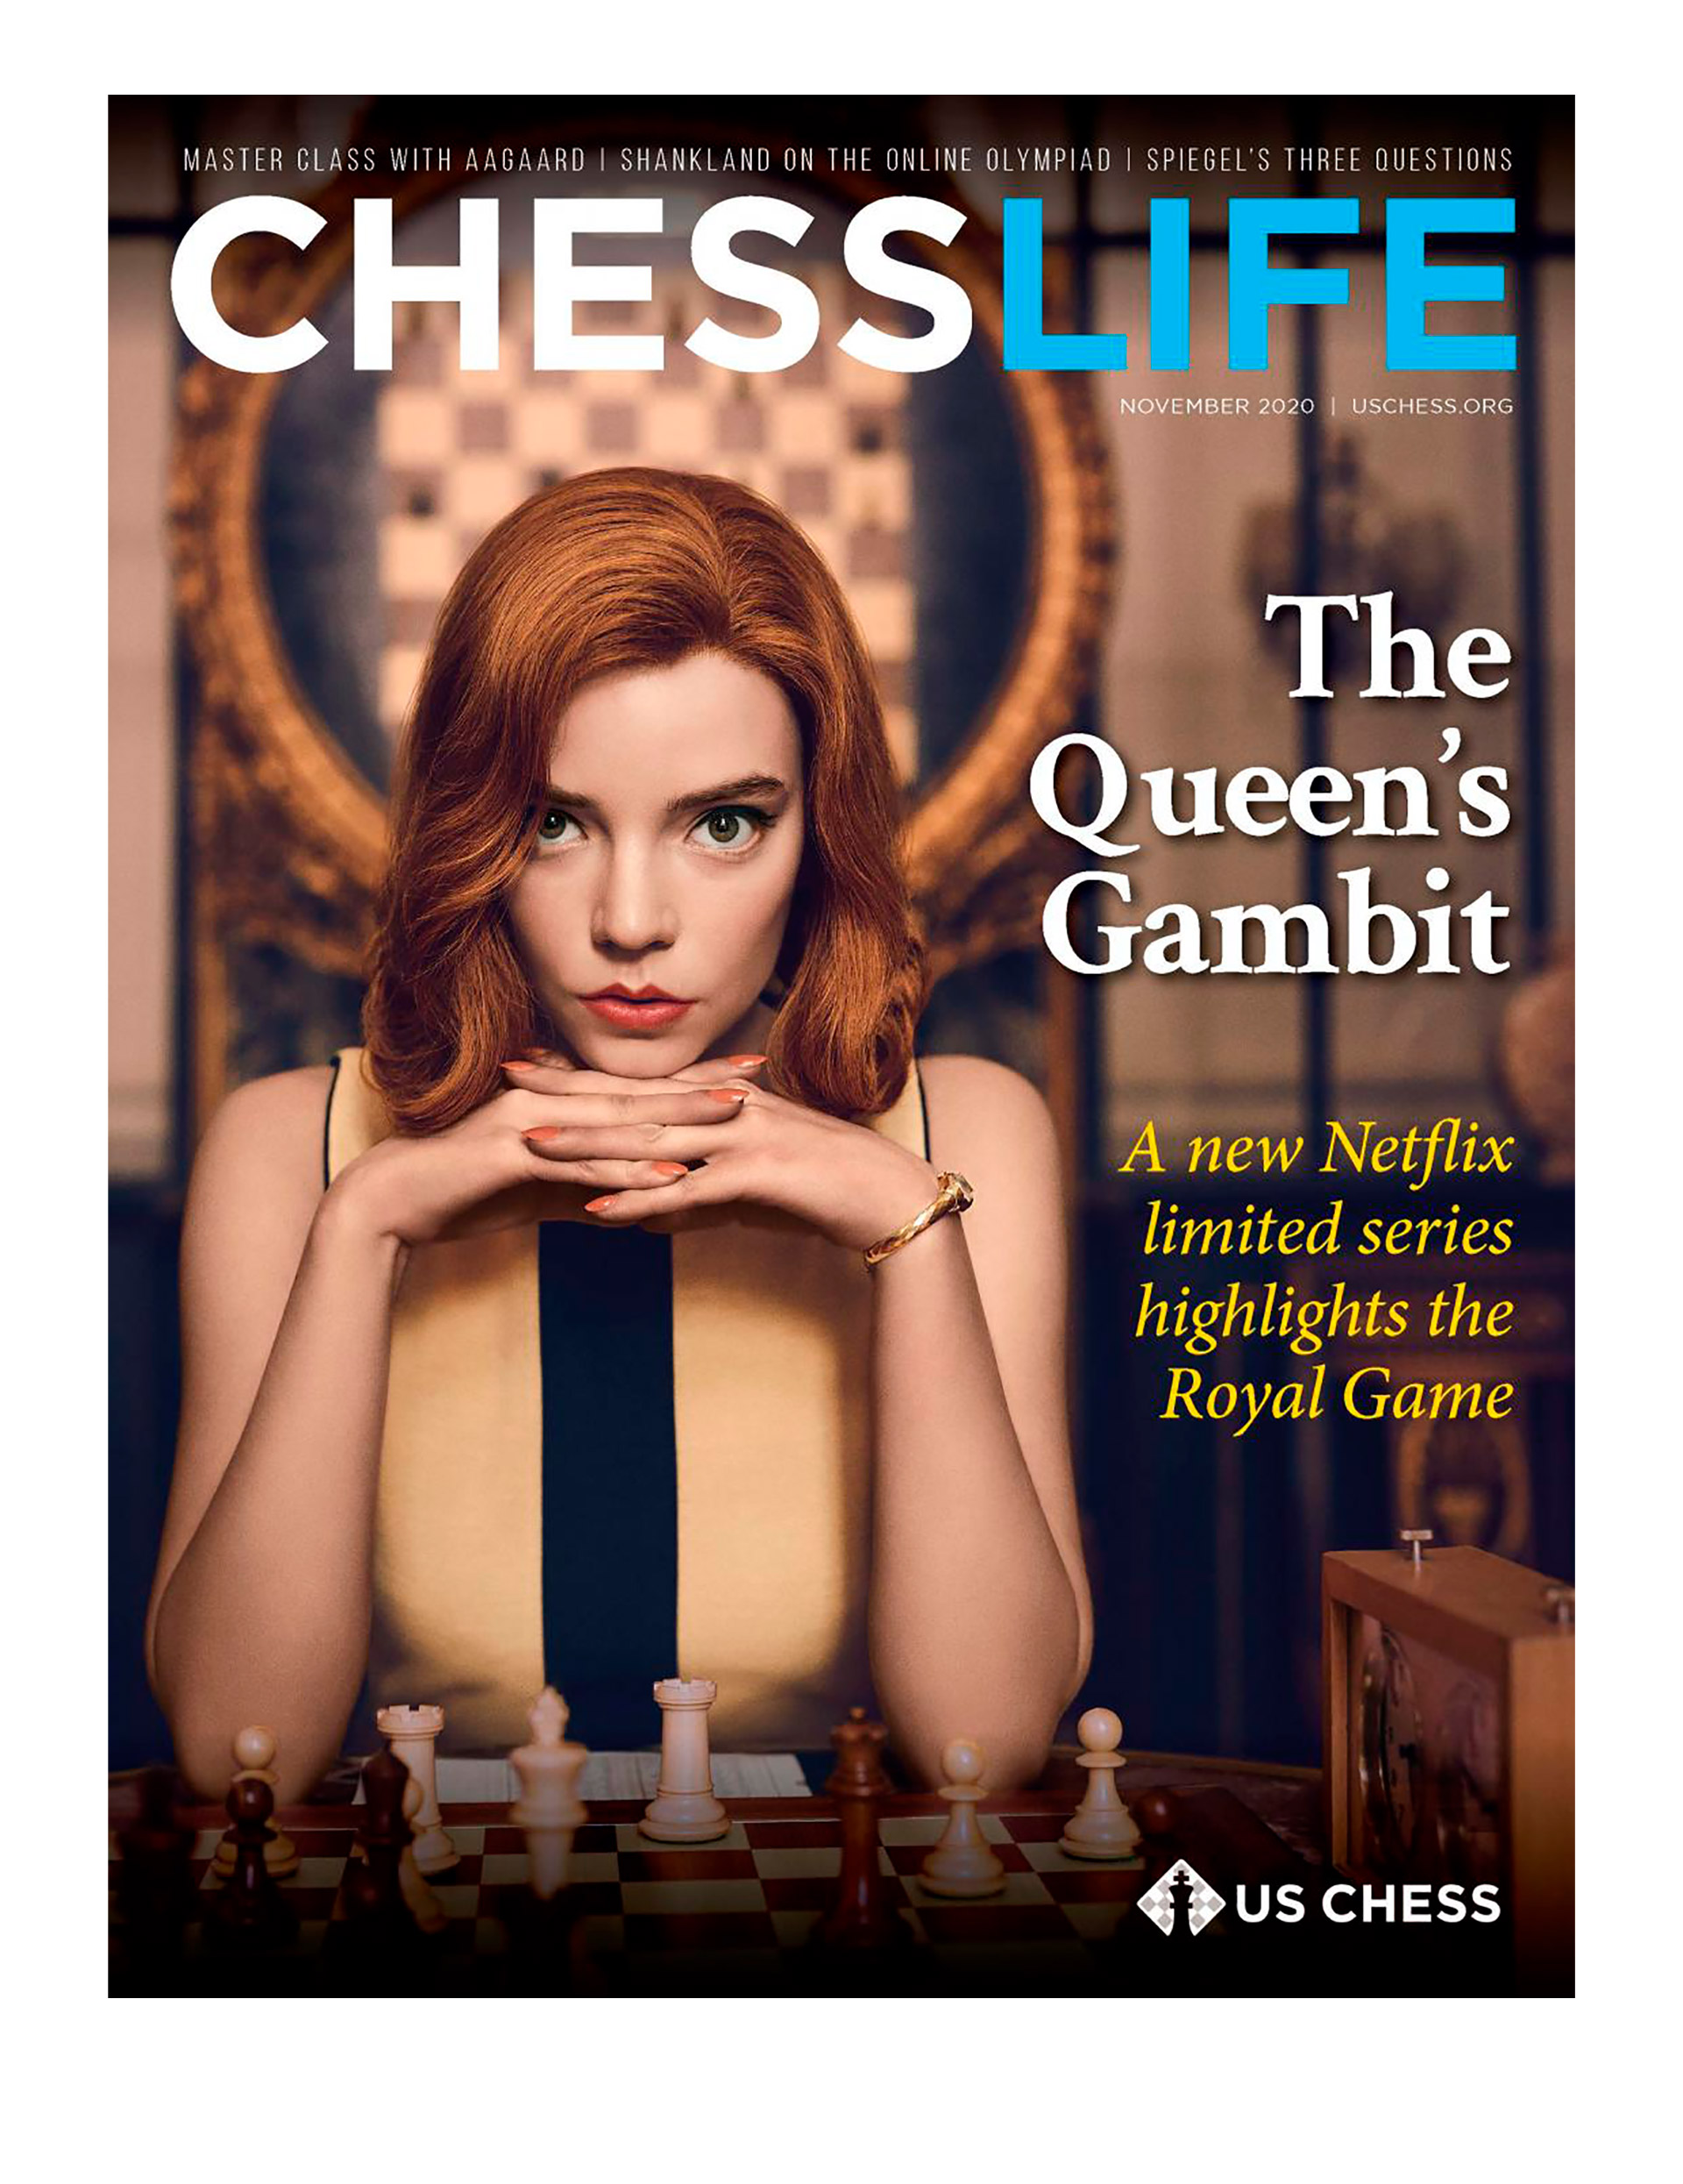 Ficción y realidad. La revista de ajedrez "más leída del mundo" y la chica que provocó un boom entre los jóvenes que buscan aprender el juego ciencia